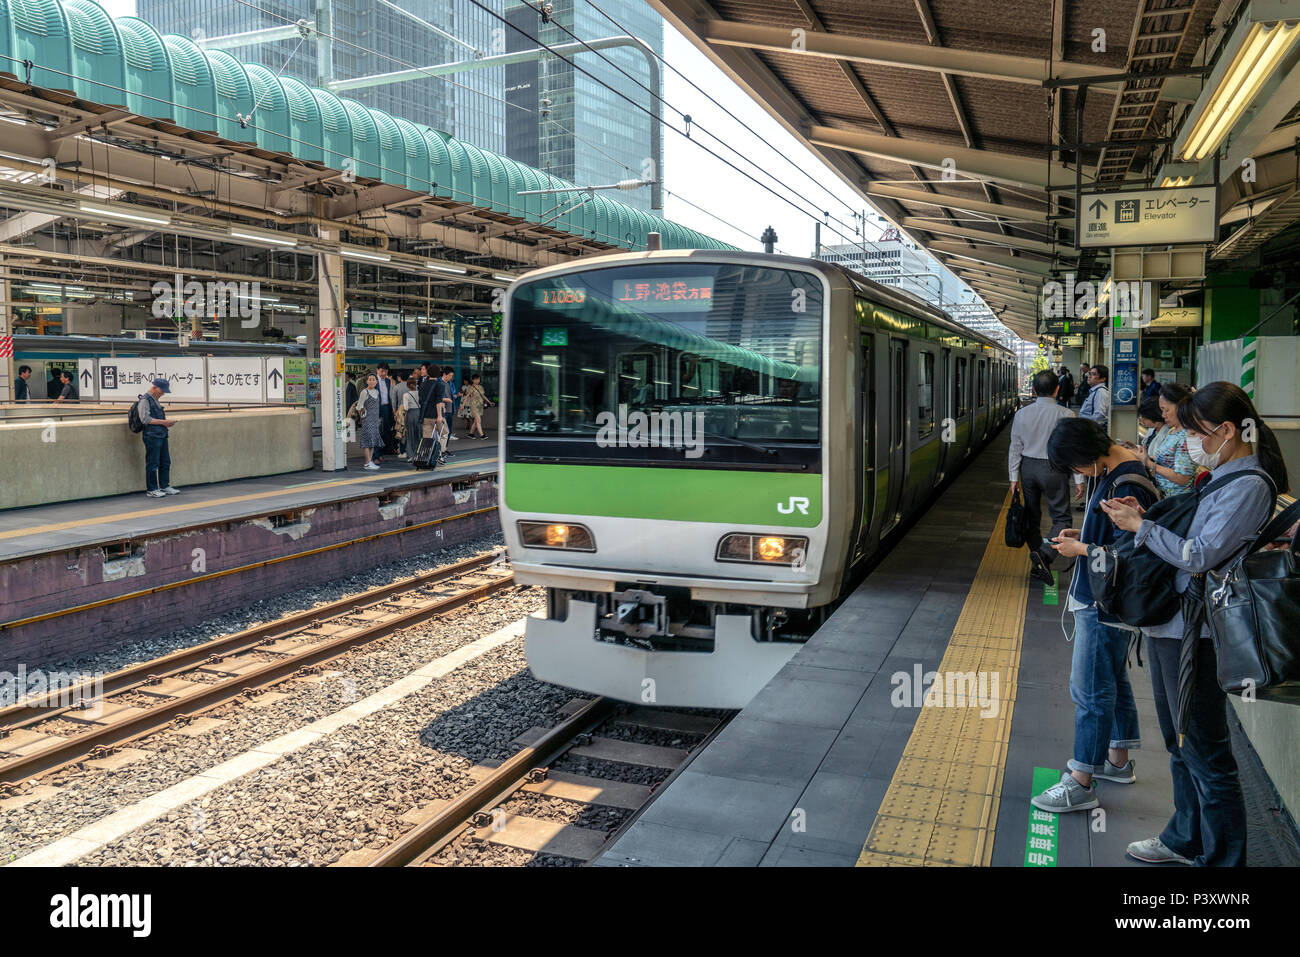 TOKYO, Giappone 22/05/2018: treno in arrivo presso la stazione dei treni mentre ci sono persone in attesa e guardando il loro smartphone Foto Stock